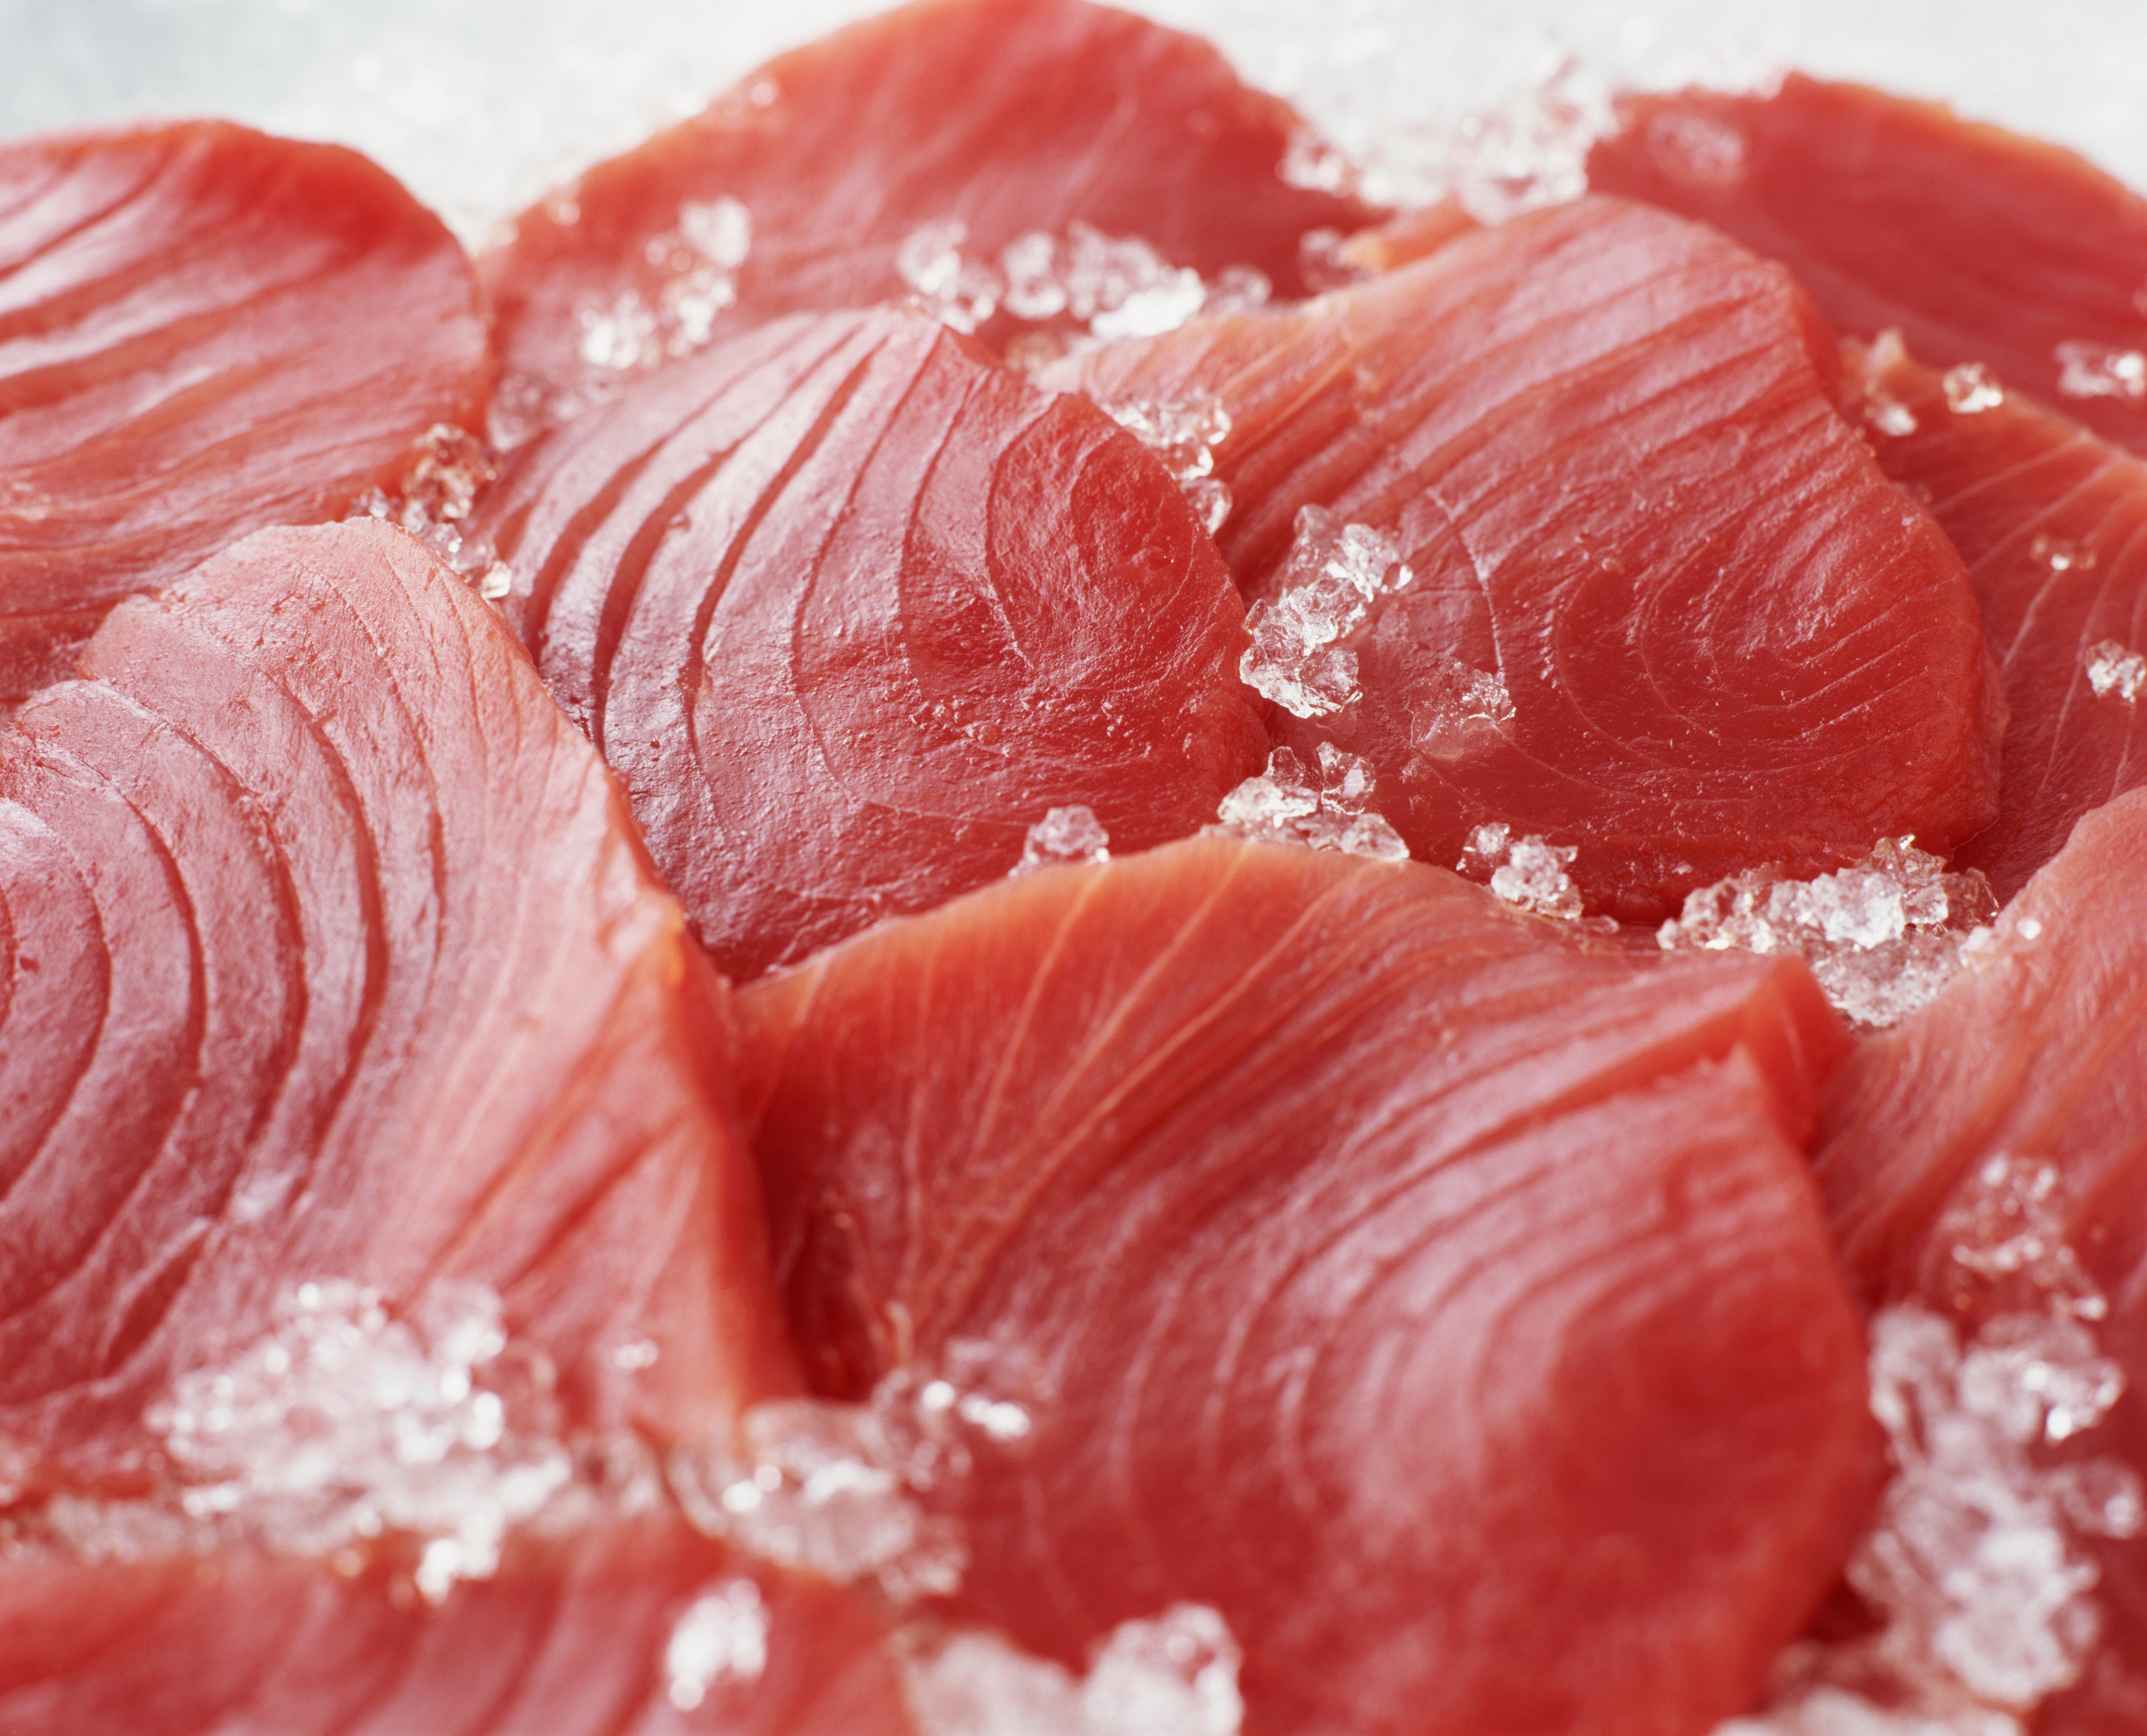 Wegversperring Intiem Aan boord Duurzame tonijn: dit moet je weten - Libelle Lekker